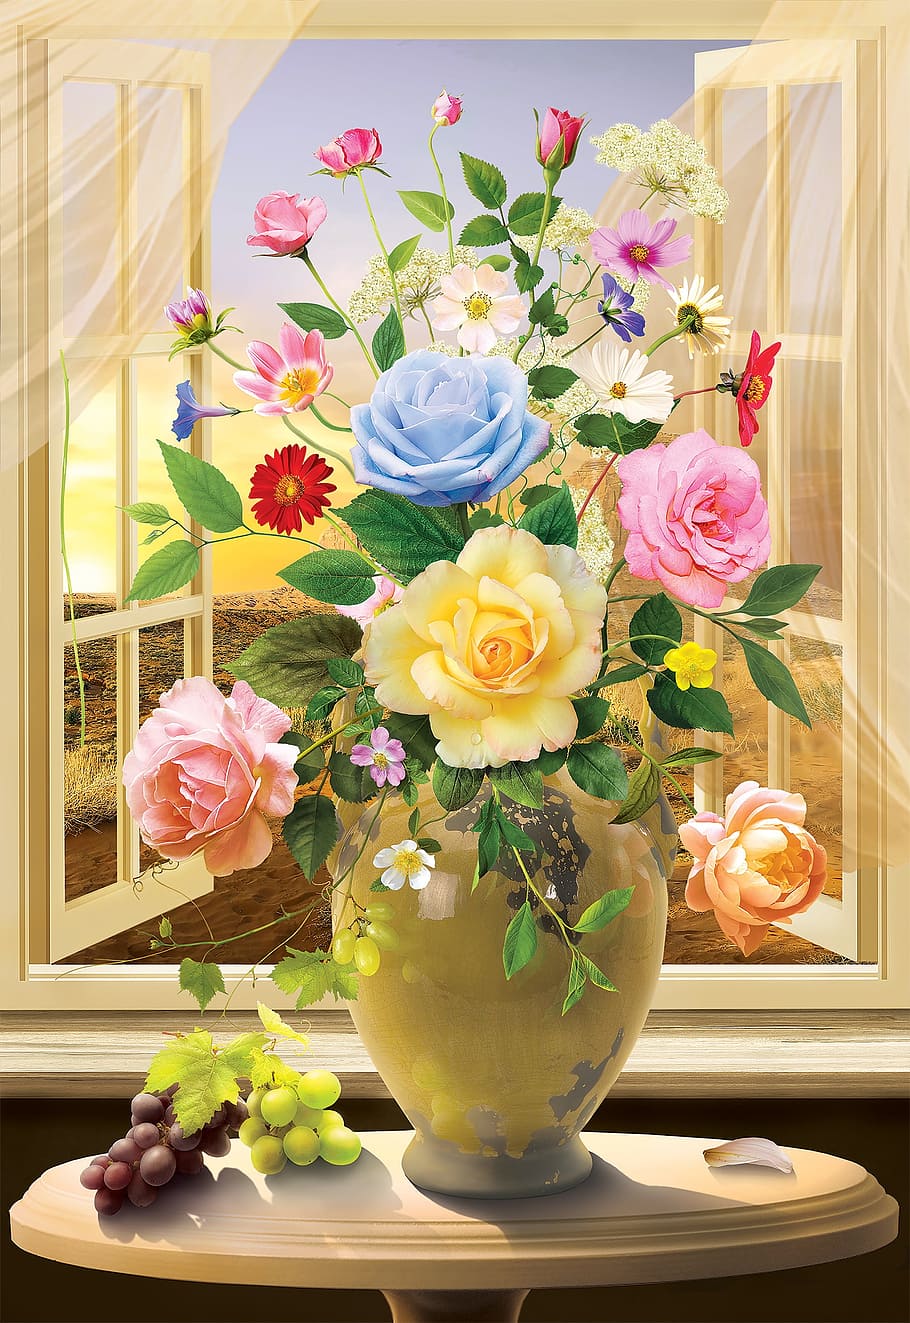 青, 黄色, 花の絵, 花, 花瓶, 飾り, 植物の静物, 開花植物, 植物, 鮮度